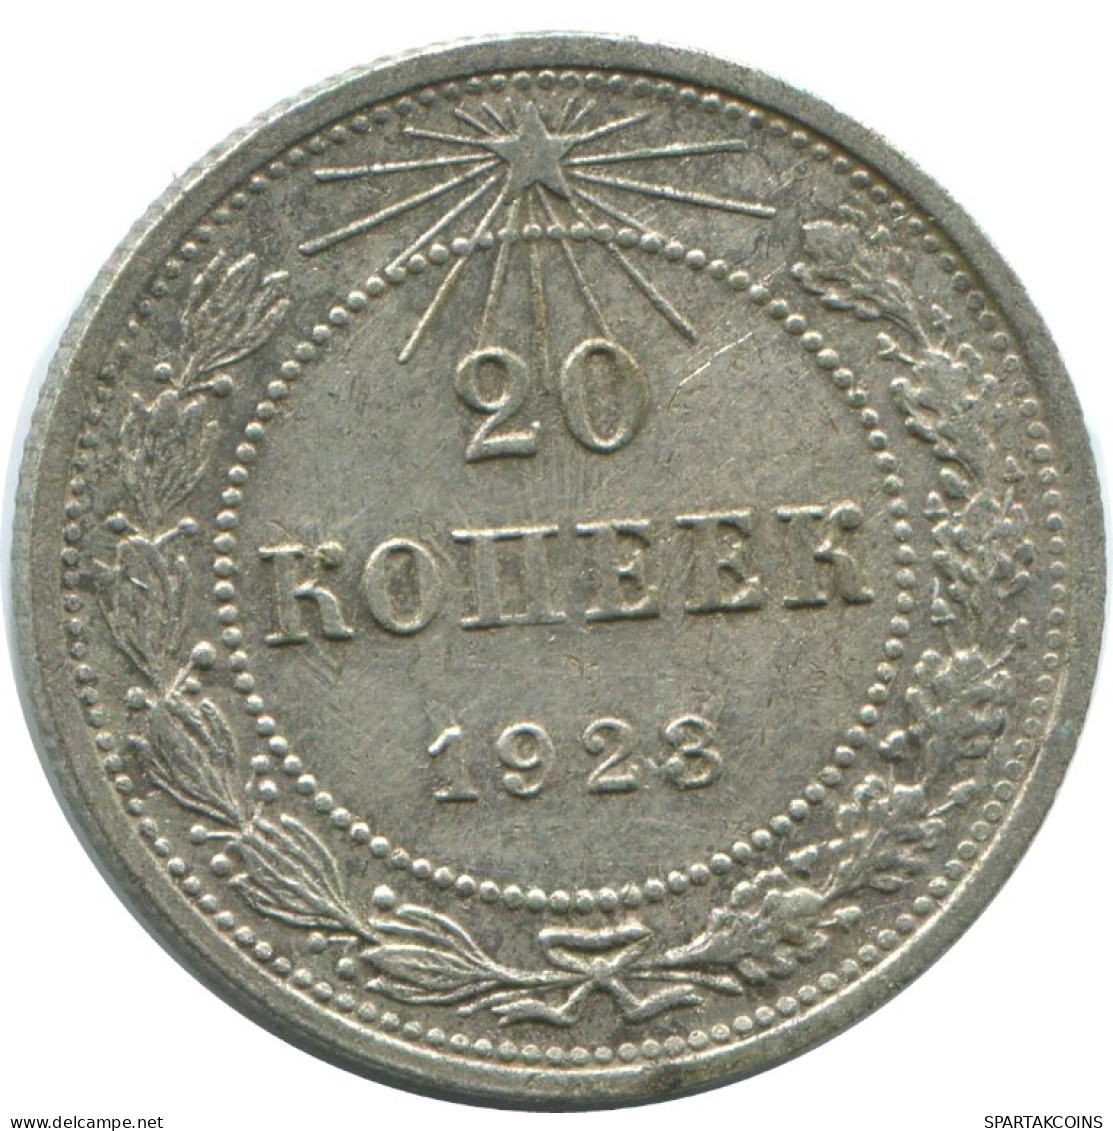 20 KOPEKS 1923 RUSIA RUSSIA RSFSR PLATA Moneda HIGH GRADE #AF520.4.E.A - Russland